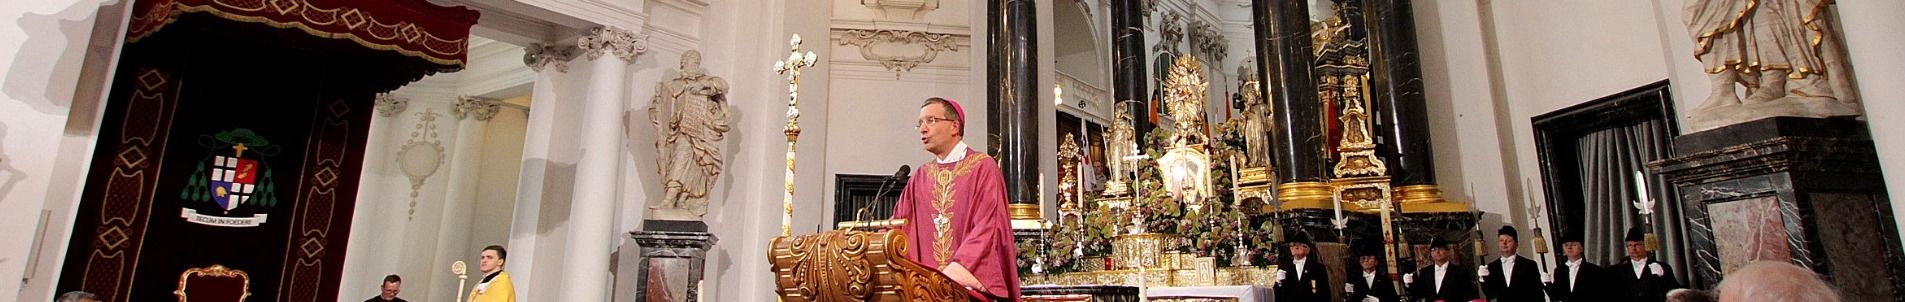 Alles Infos, Bilder, Videos zur Amtseinführung unseres Bischofs von Fulda, Dr. Michael Gerber